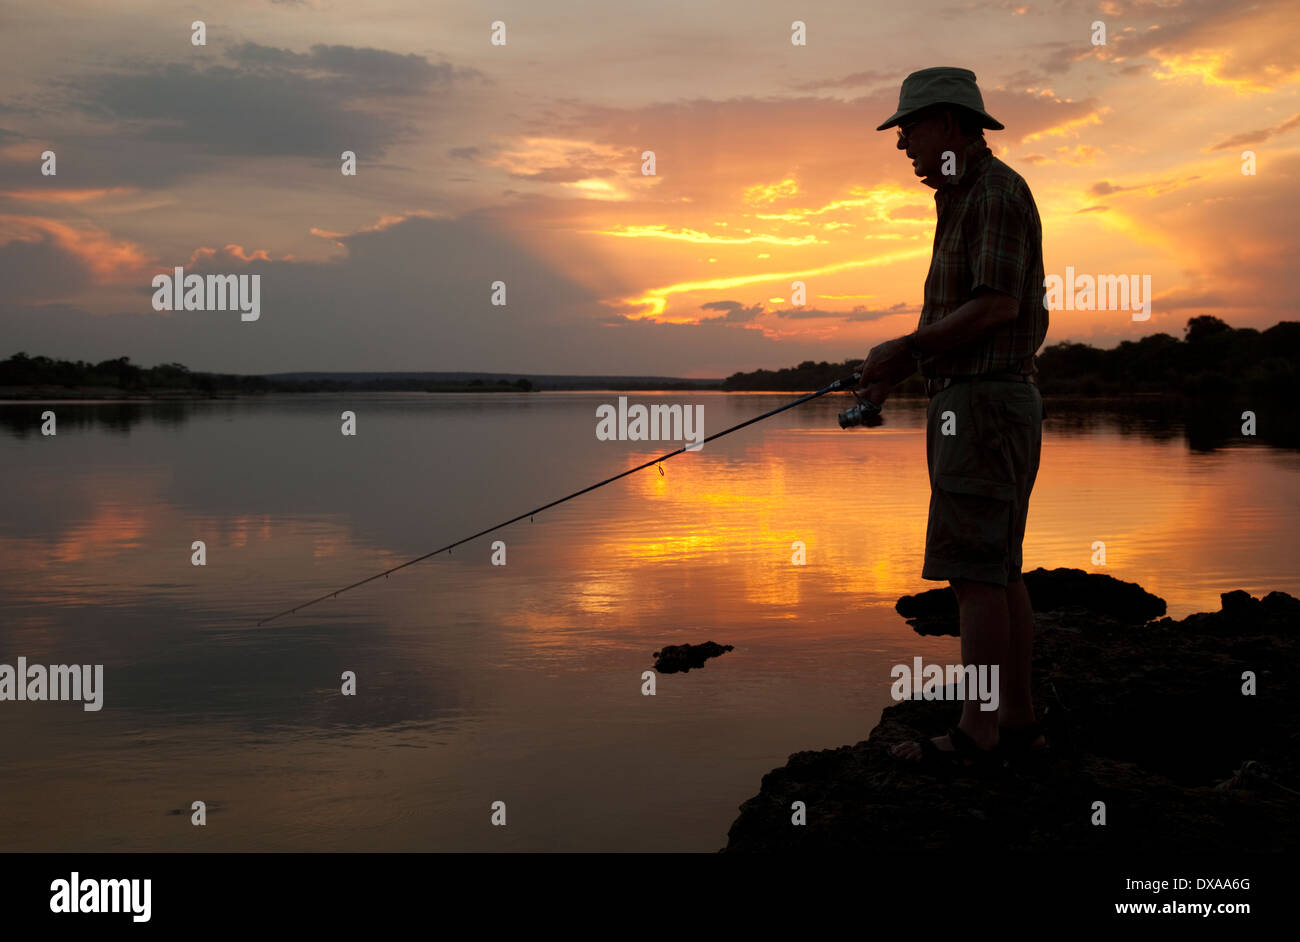 Silhouette of angler fishing in Zambezi River at sunset near Livingstone Zambia Stock Photo